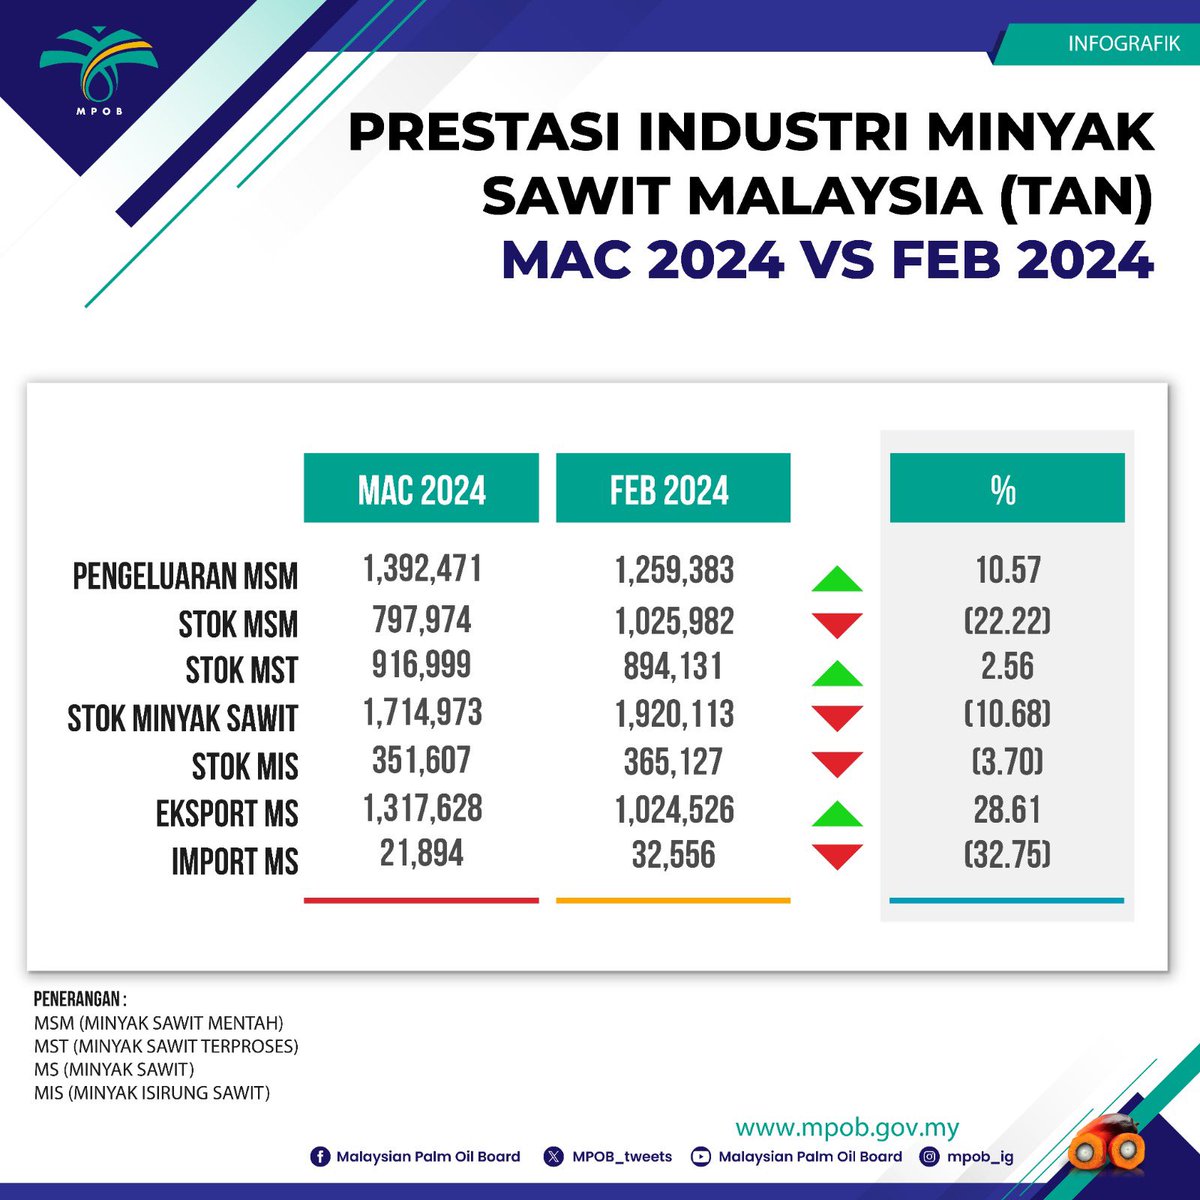 ▶️ Prestasi Industri Sawit bagi Mac 2024 berbanding Februari 2024.